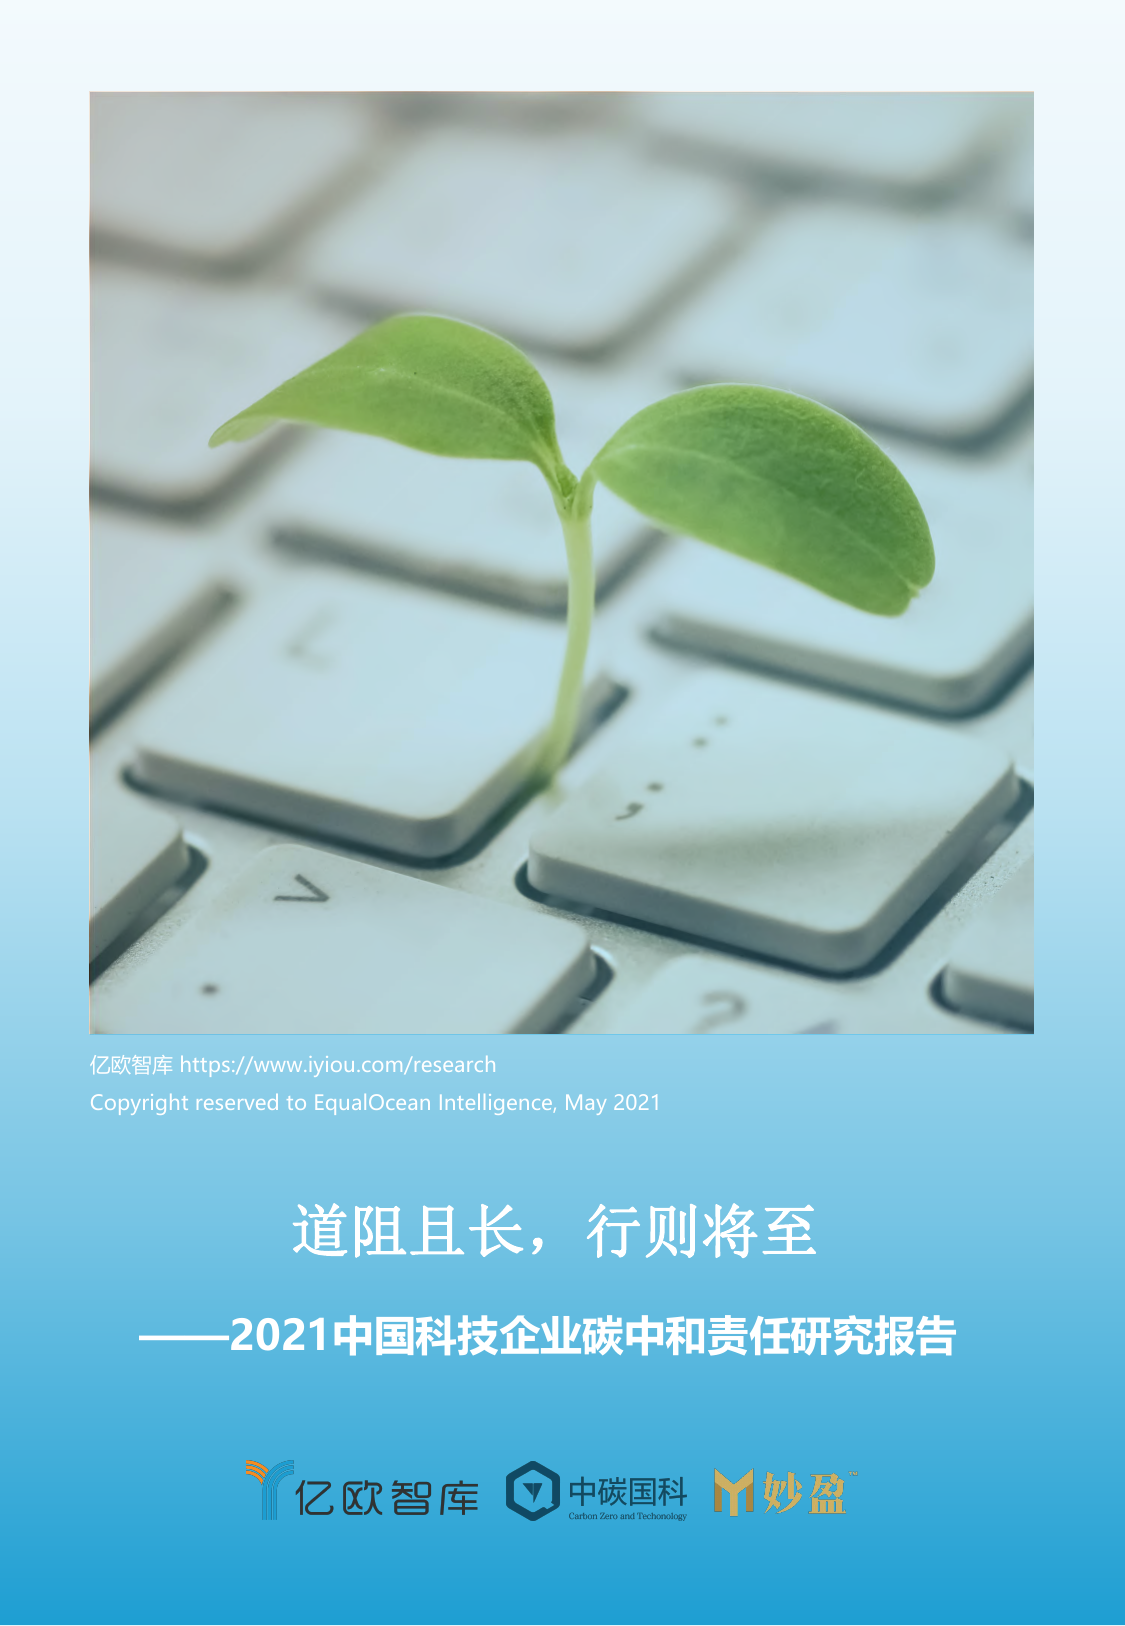 2021中国科技企业碳中和责任研究报告-亿欧智库-2021-42页